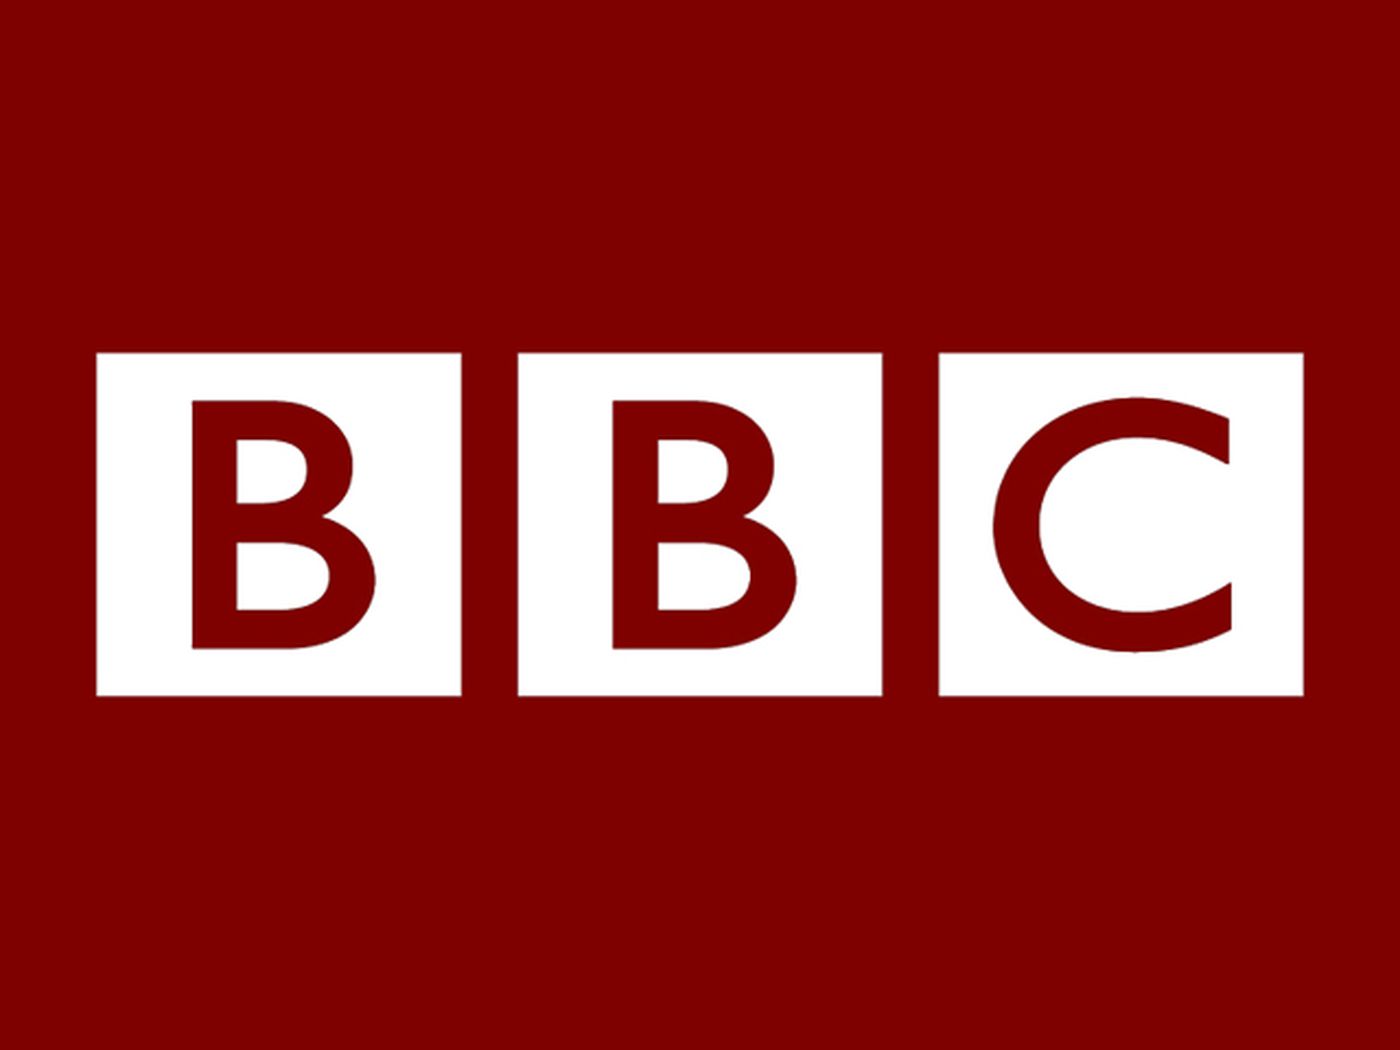 La BBC ha vietato a OpenAI di raccogliere dati dai suoi siti web, ma ha espresso il suo impegno nei confronti del giornalismo basato sull'intelligenza artificiale.